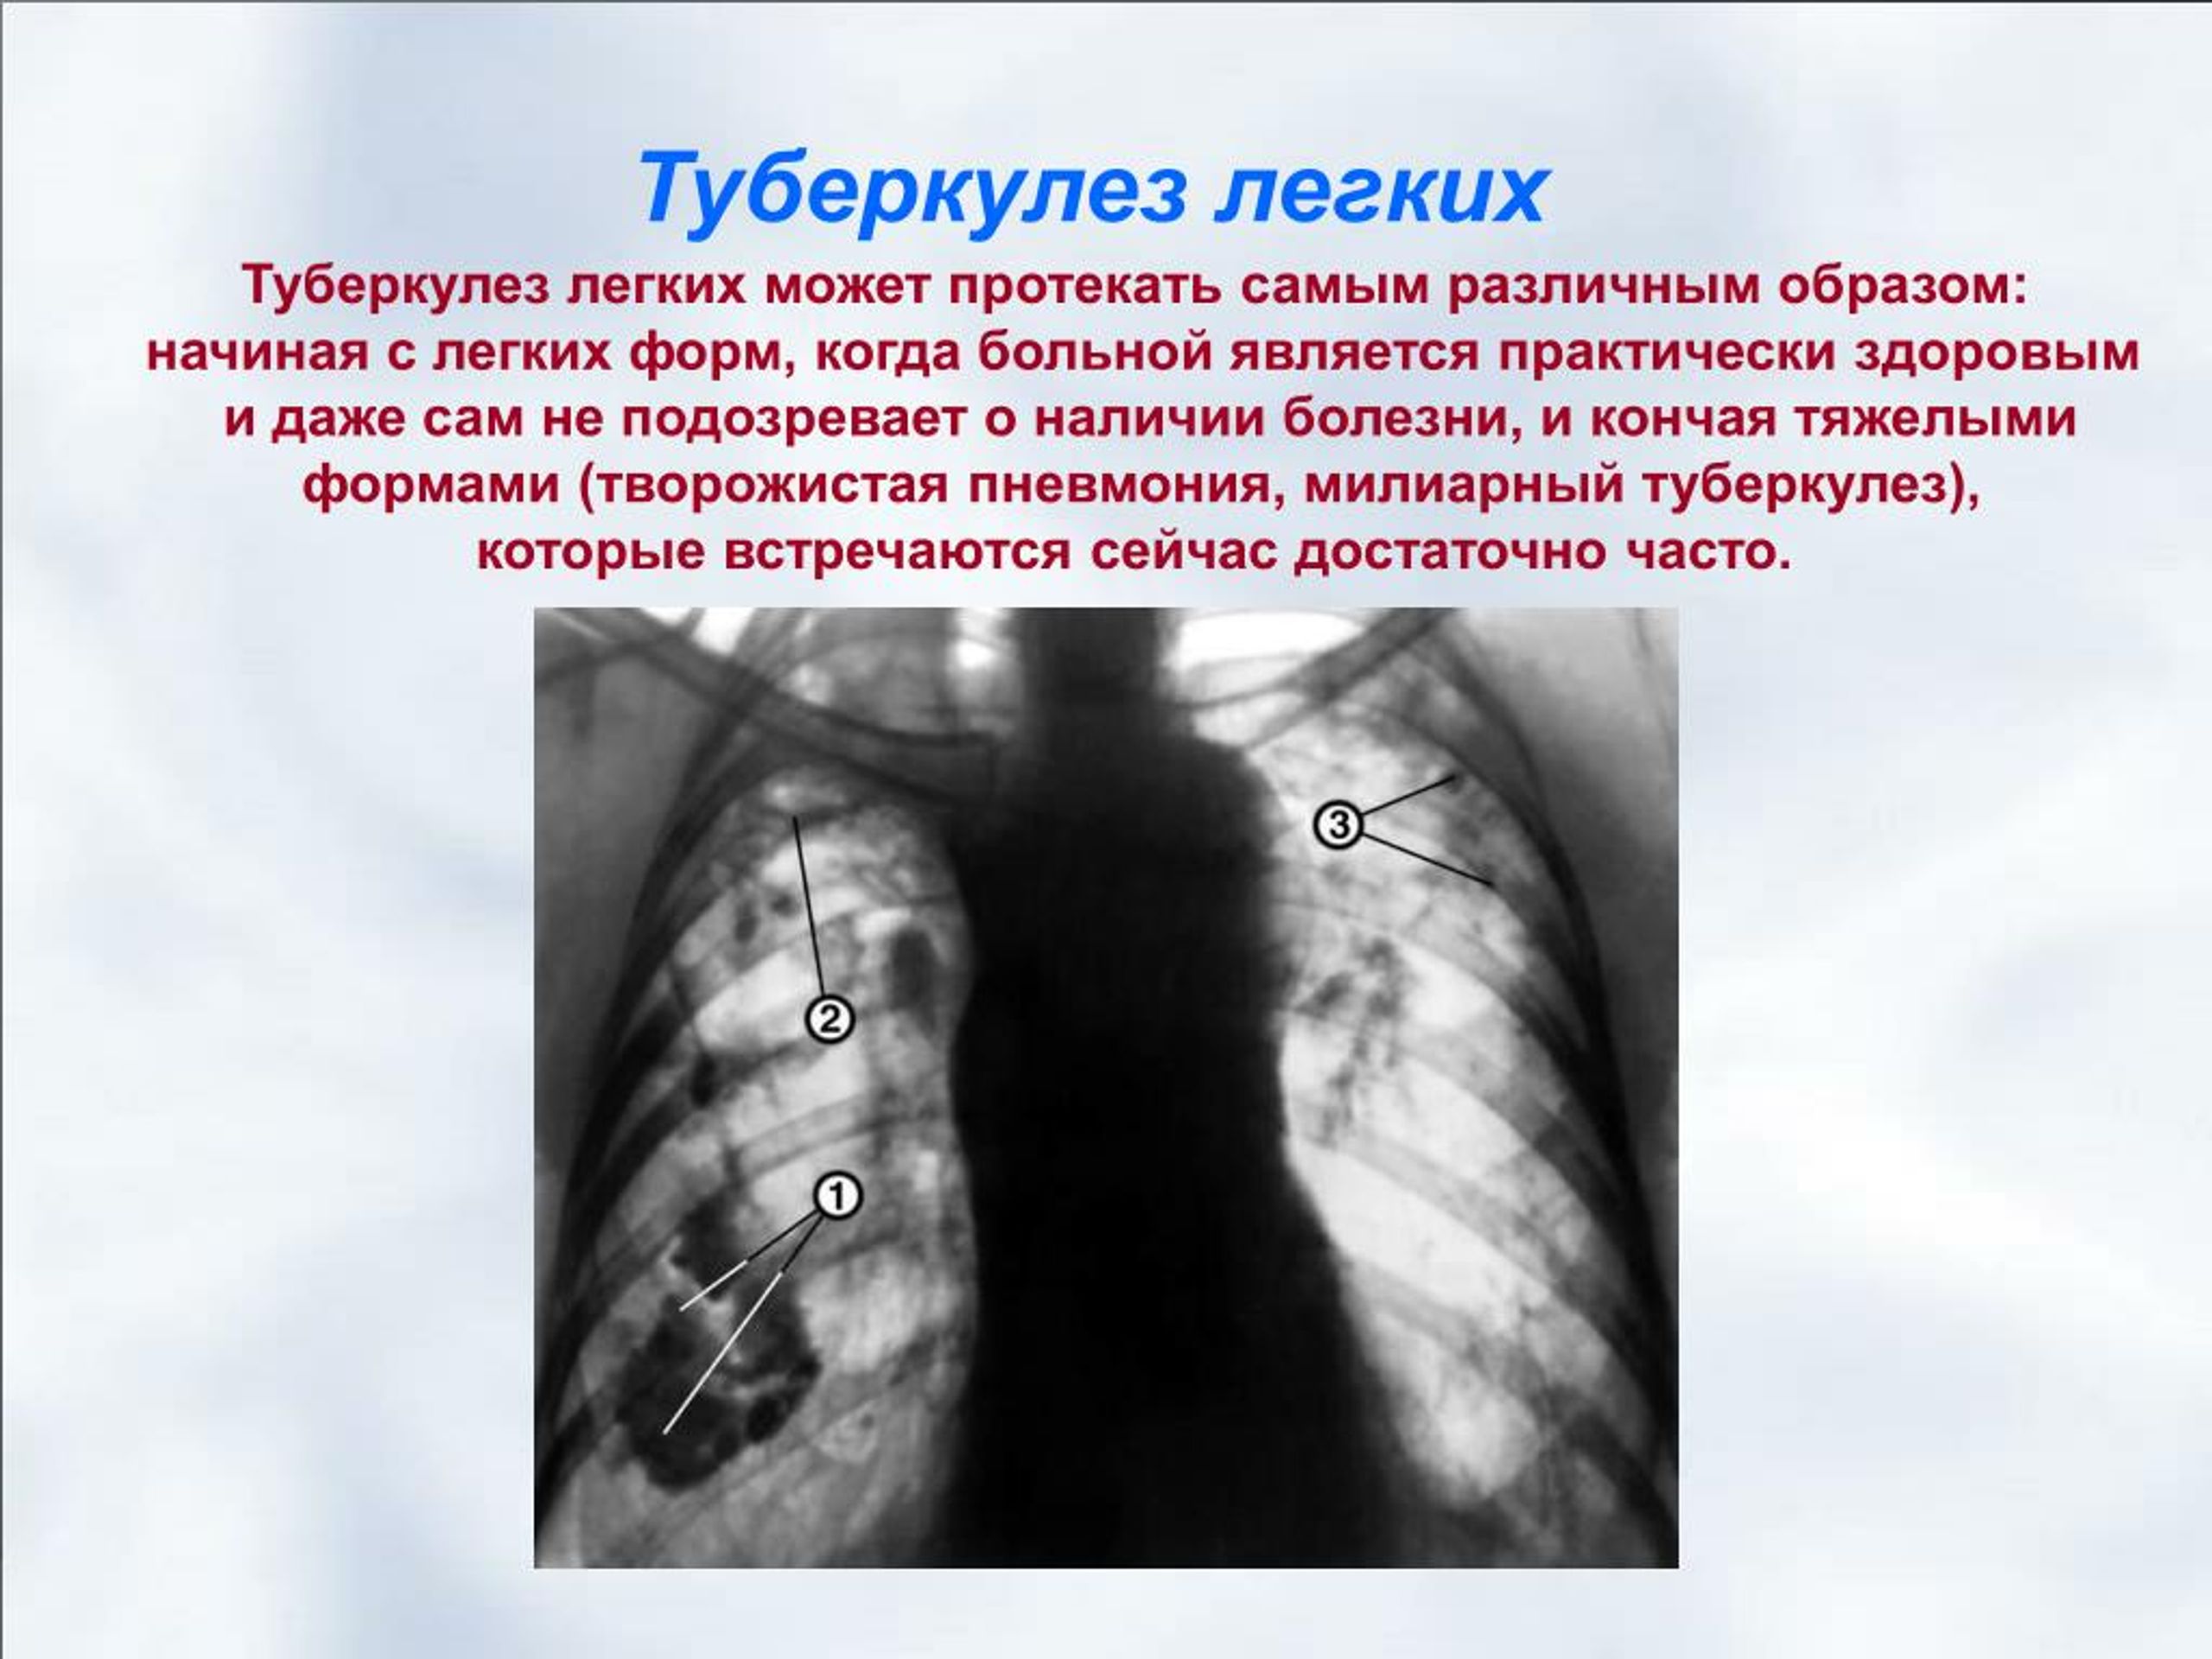 Легкие человека с туберкулезом. Туберкулёз открытой формы. Лёгкие больного туберкулезом.